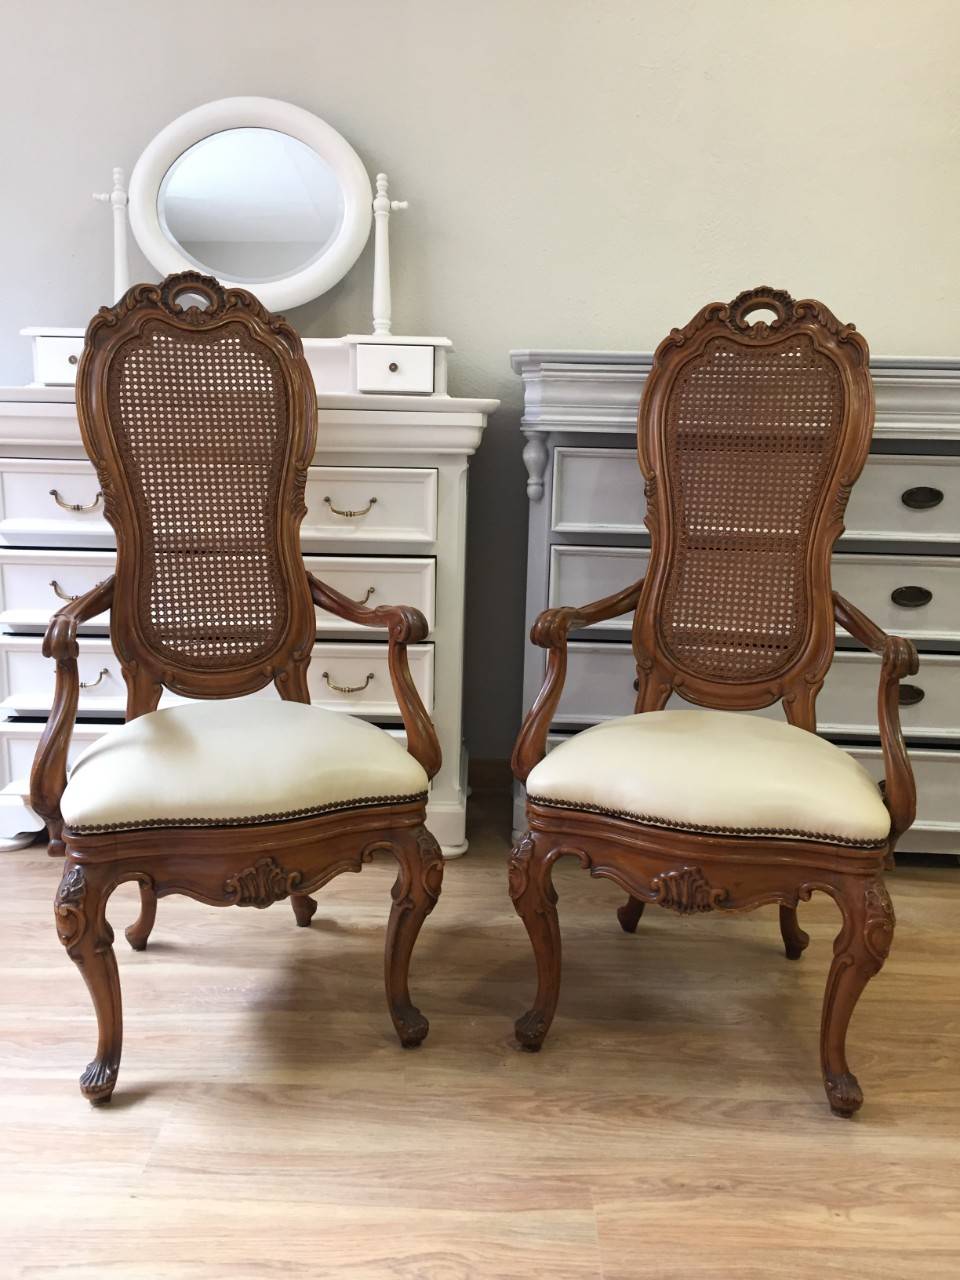 Antes de unas sillas anticuadas restauradas. Antes: unas sillas con historia que daba pena tirar